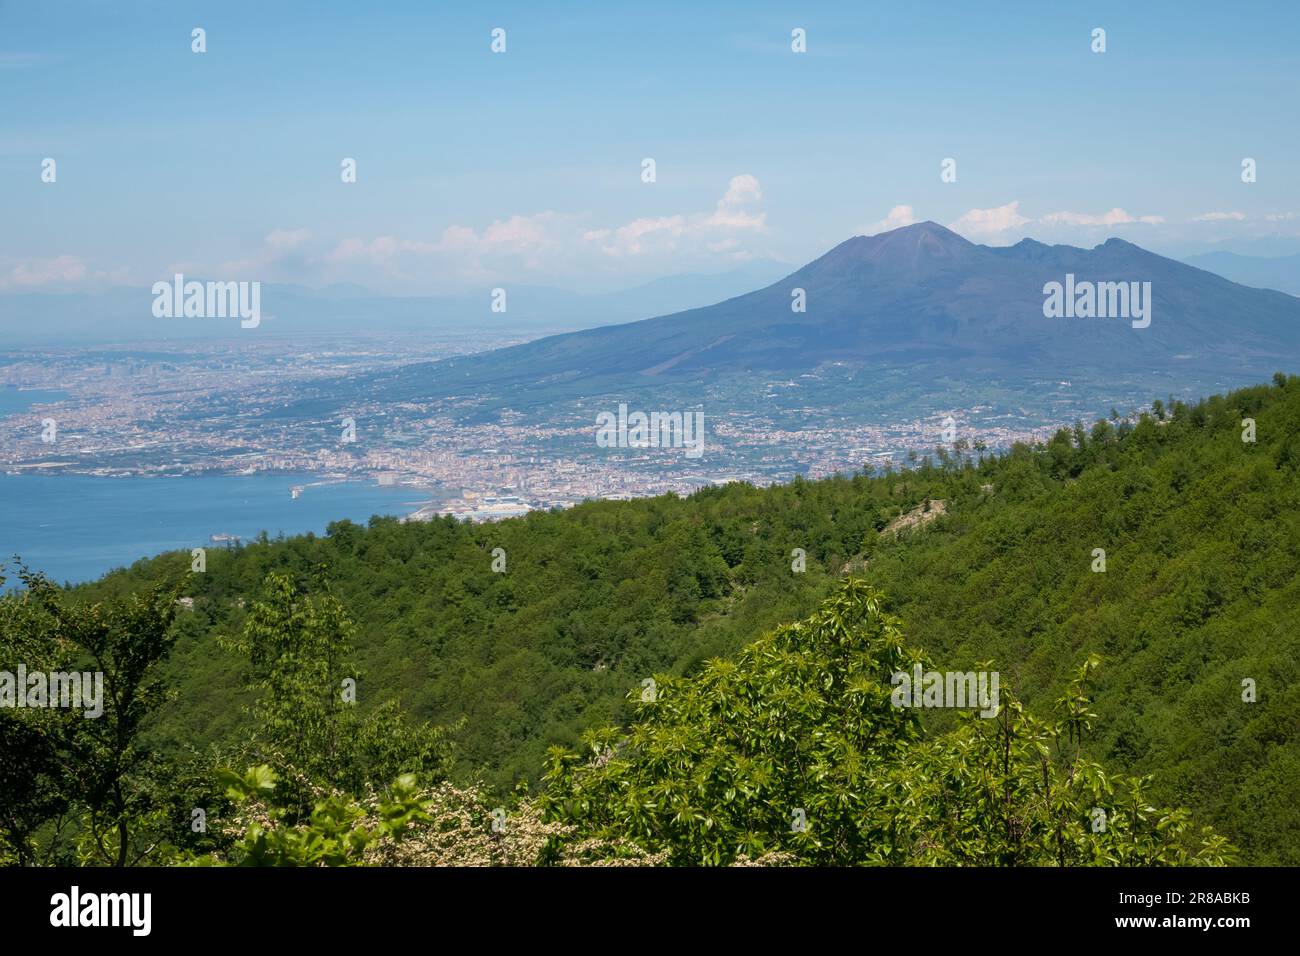 Affacciato sul Golfo di Napoli, nelle vicinanze si trova il Vesuvio, regione Campania d'Italia. Foto Stock